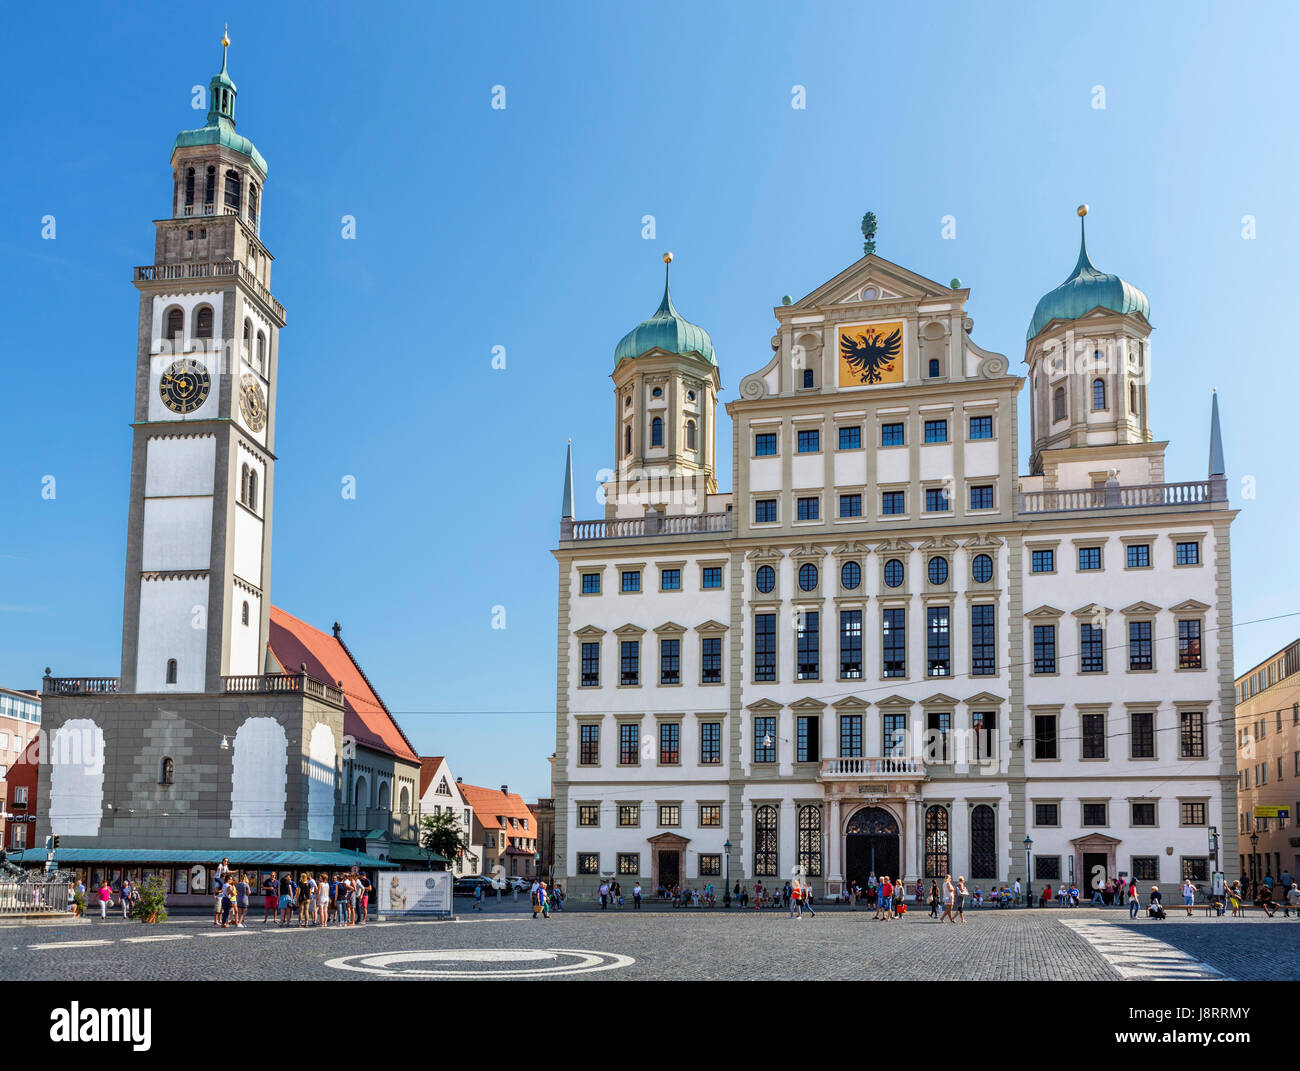 L'hôtel de ville (Rathaus) et Perlach (Tour Perlachturm), Rathausplatz, Augsbourg, Bavière, Allemagne Banque D'Images